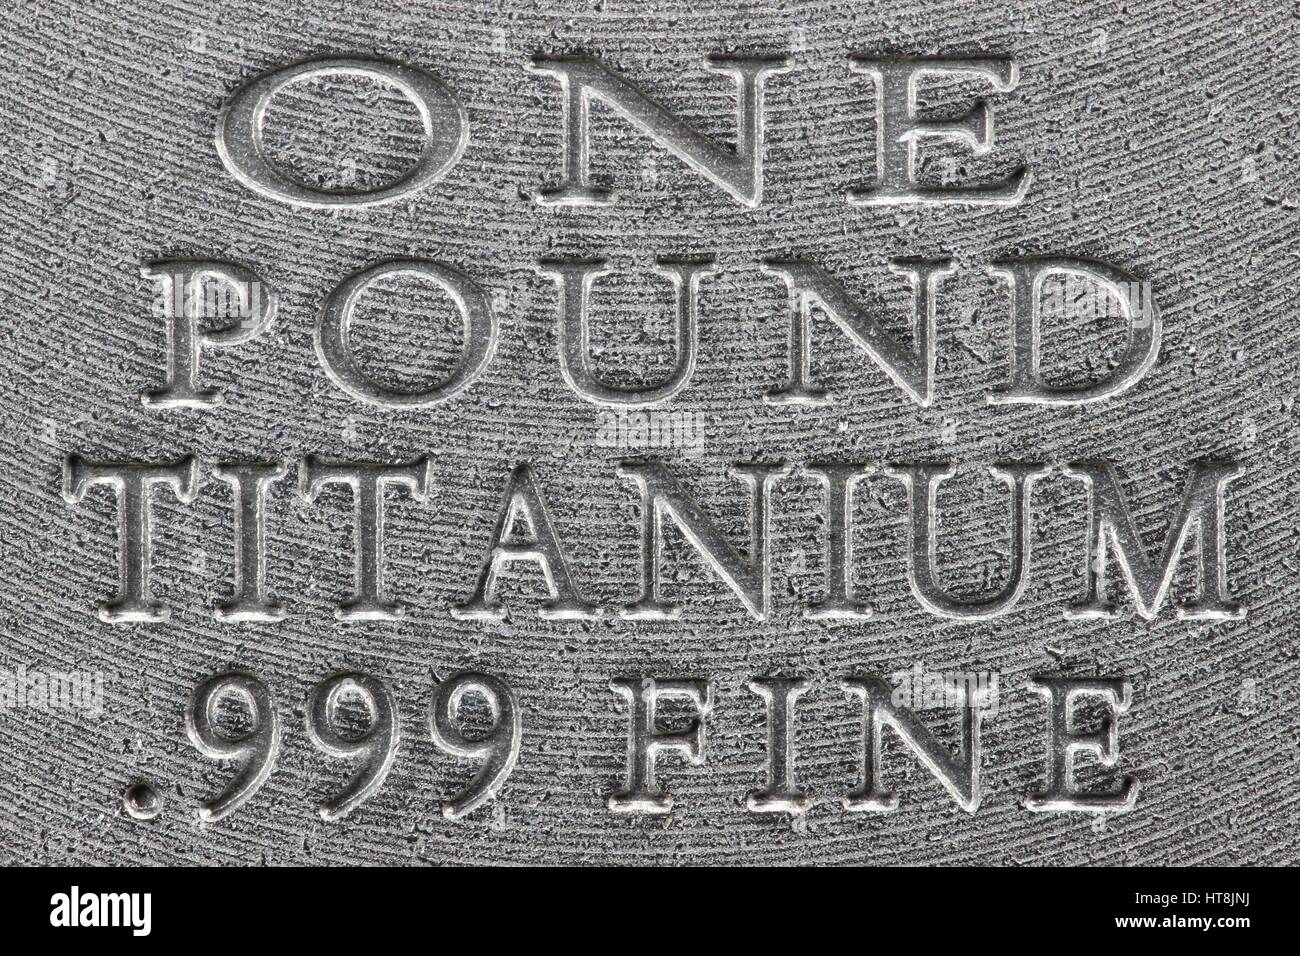 one pound titanium ingot Stock Photo